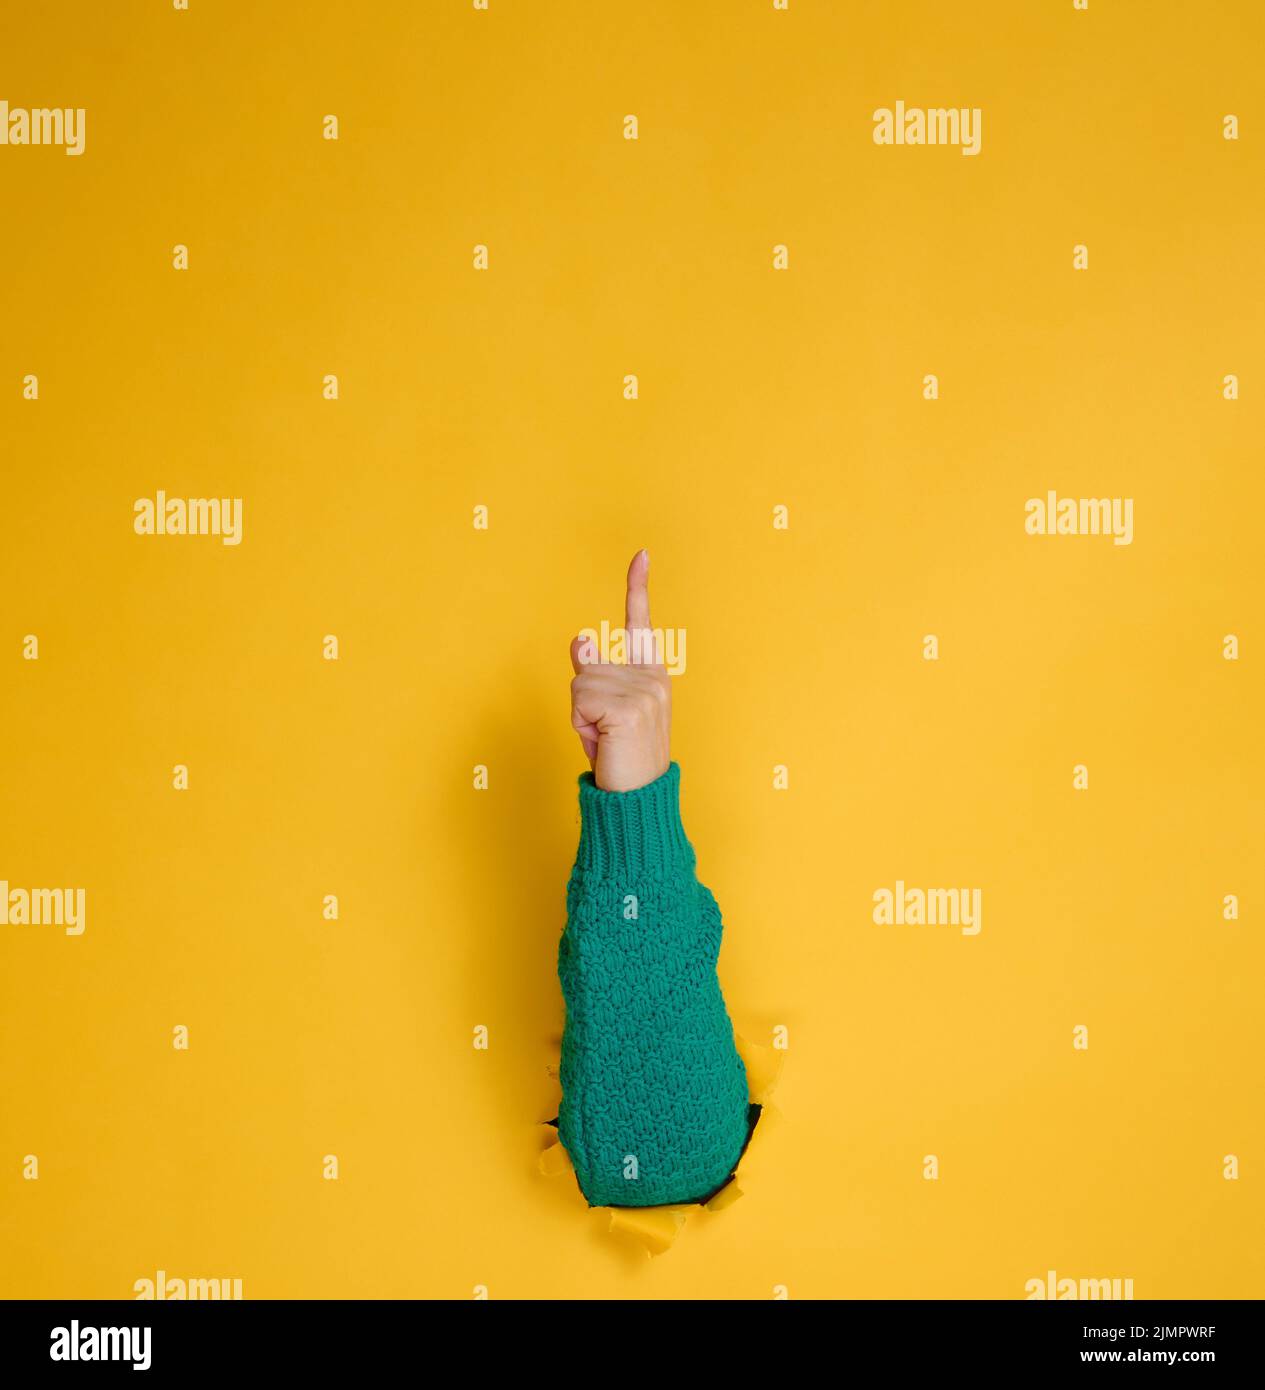 Weibliche Hand ragt aus einem zerrissenen Loch auf einem gelben Papierhintergrund, ein Teil des Körpers zeigt mit dem Zeigefinger nach oben. Kopie en Stockfoto